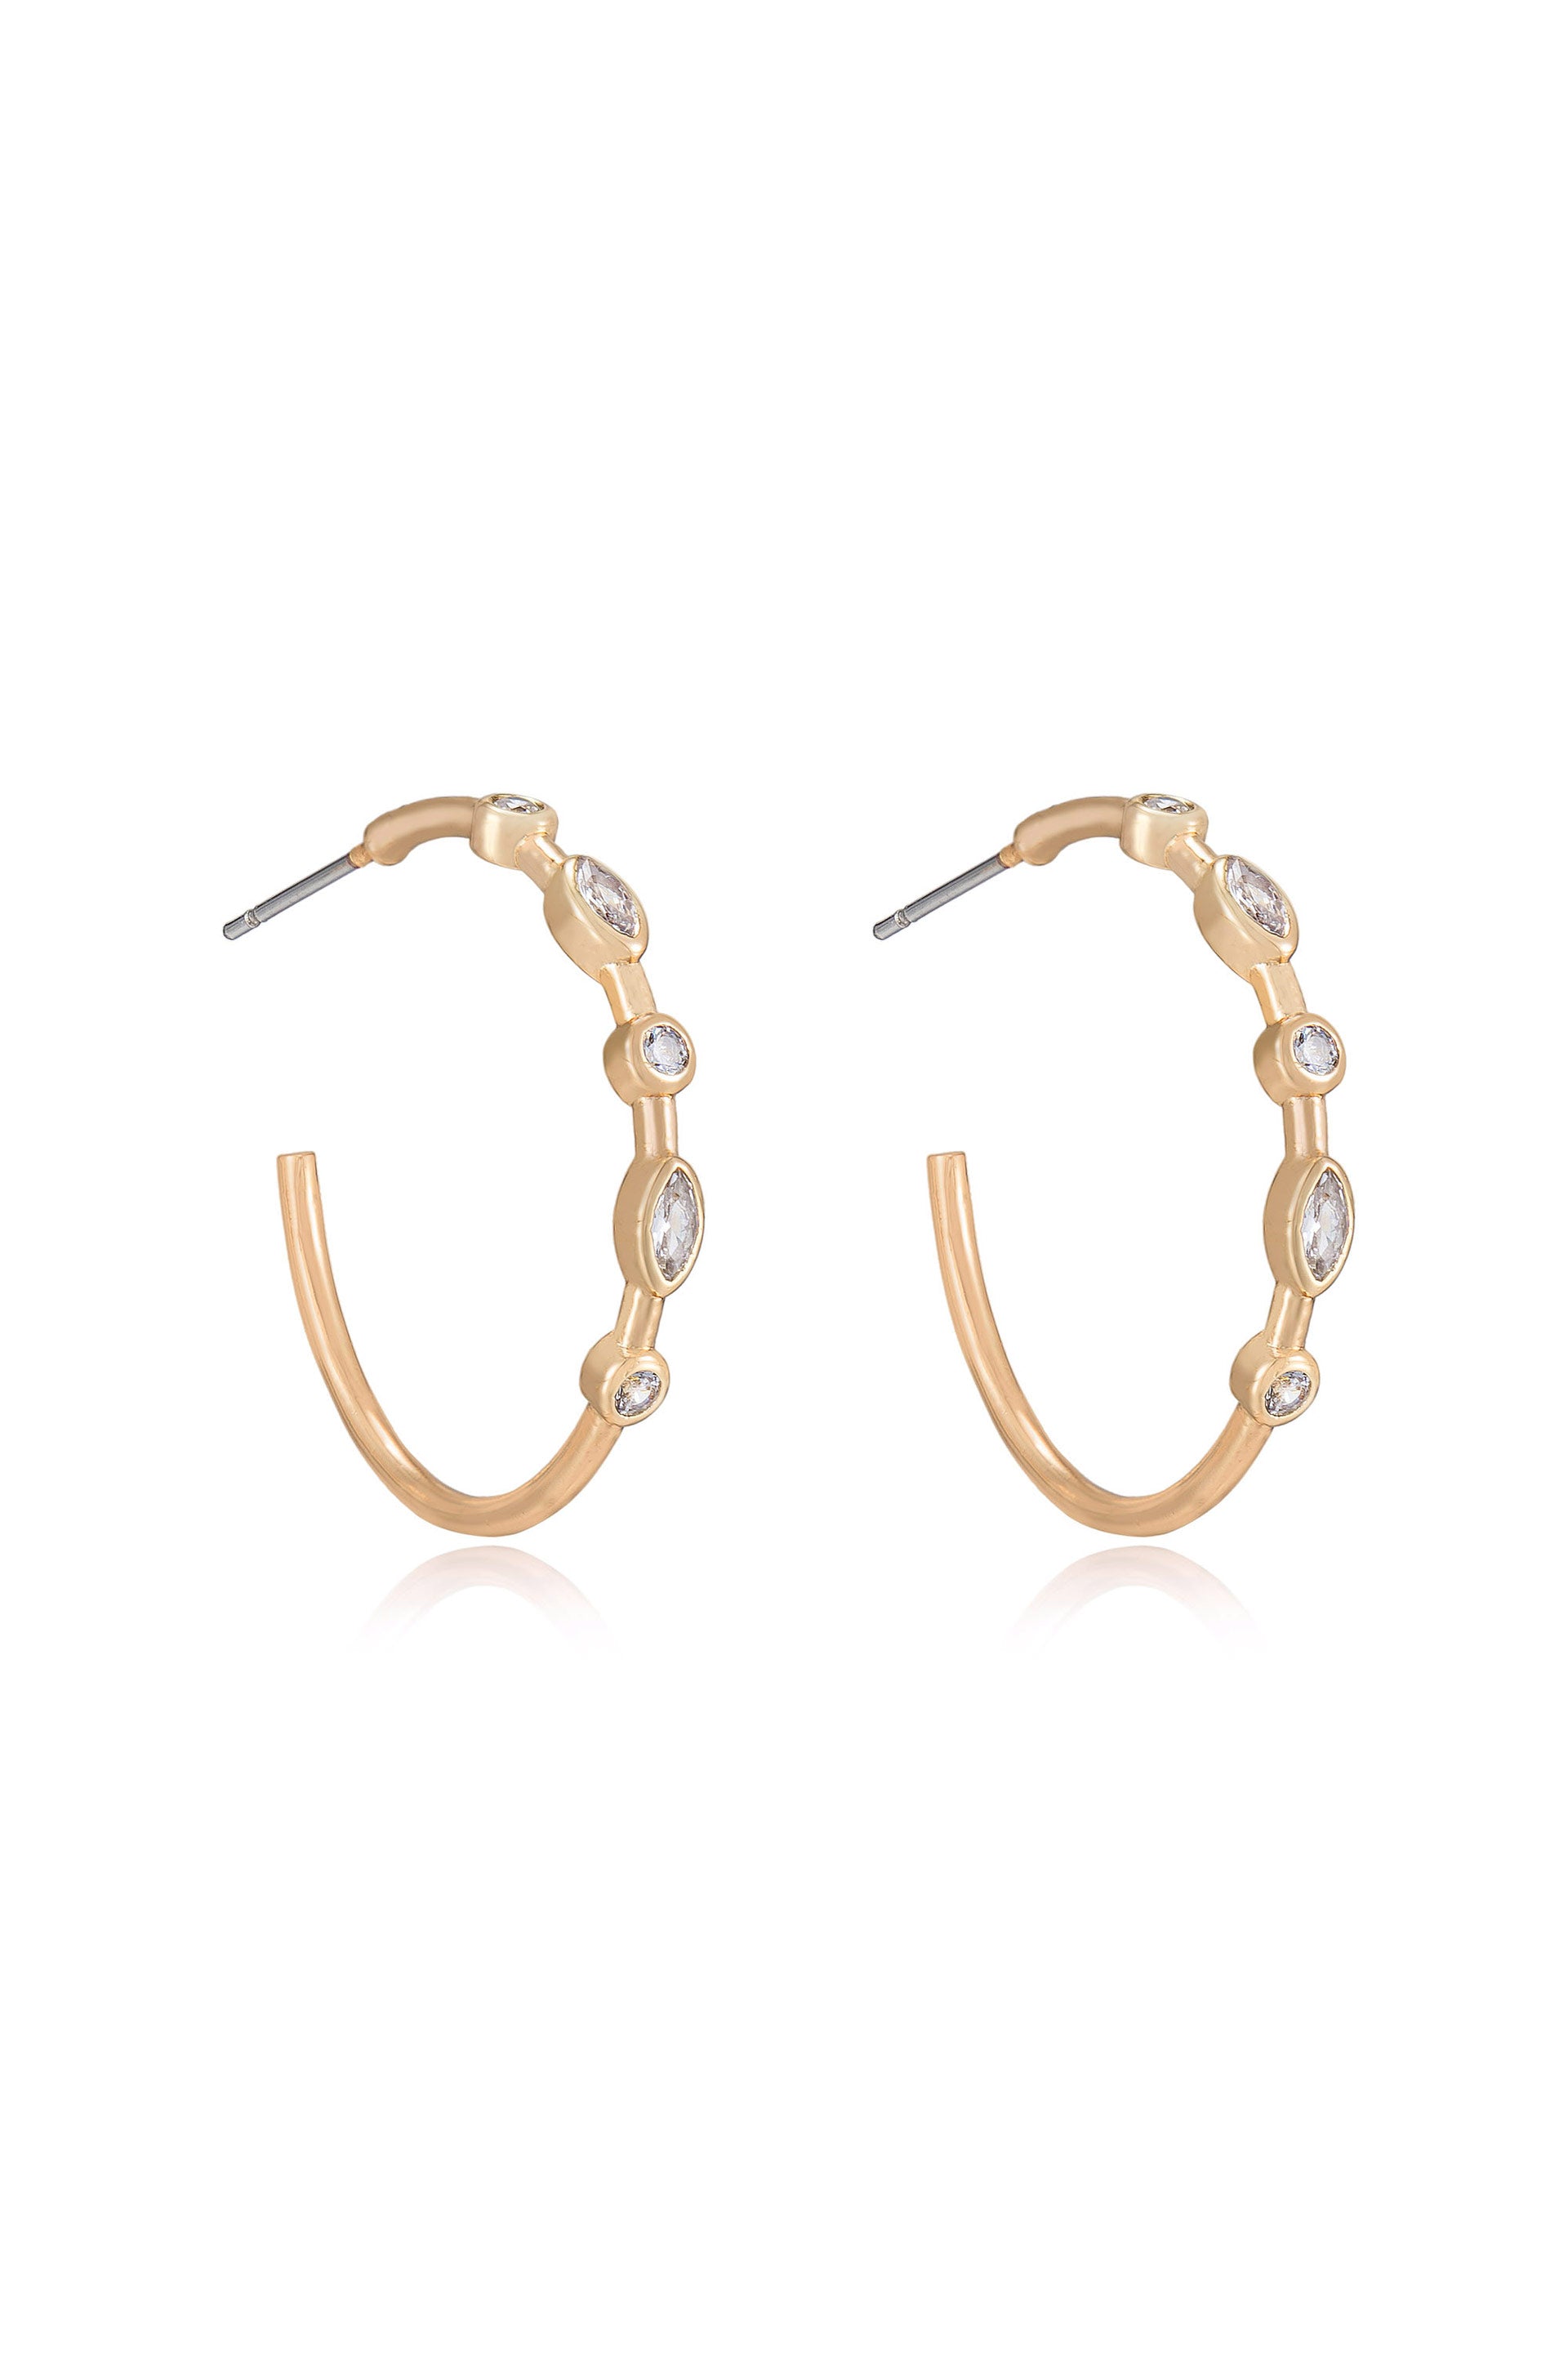 Crystal Queen 18k Gold Plated Hoop Earrings side